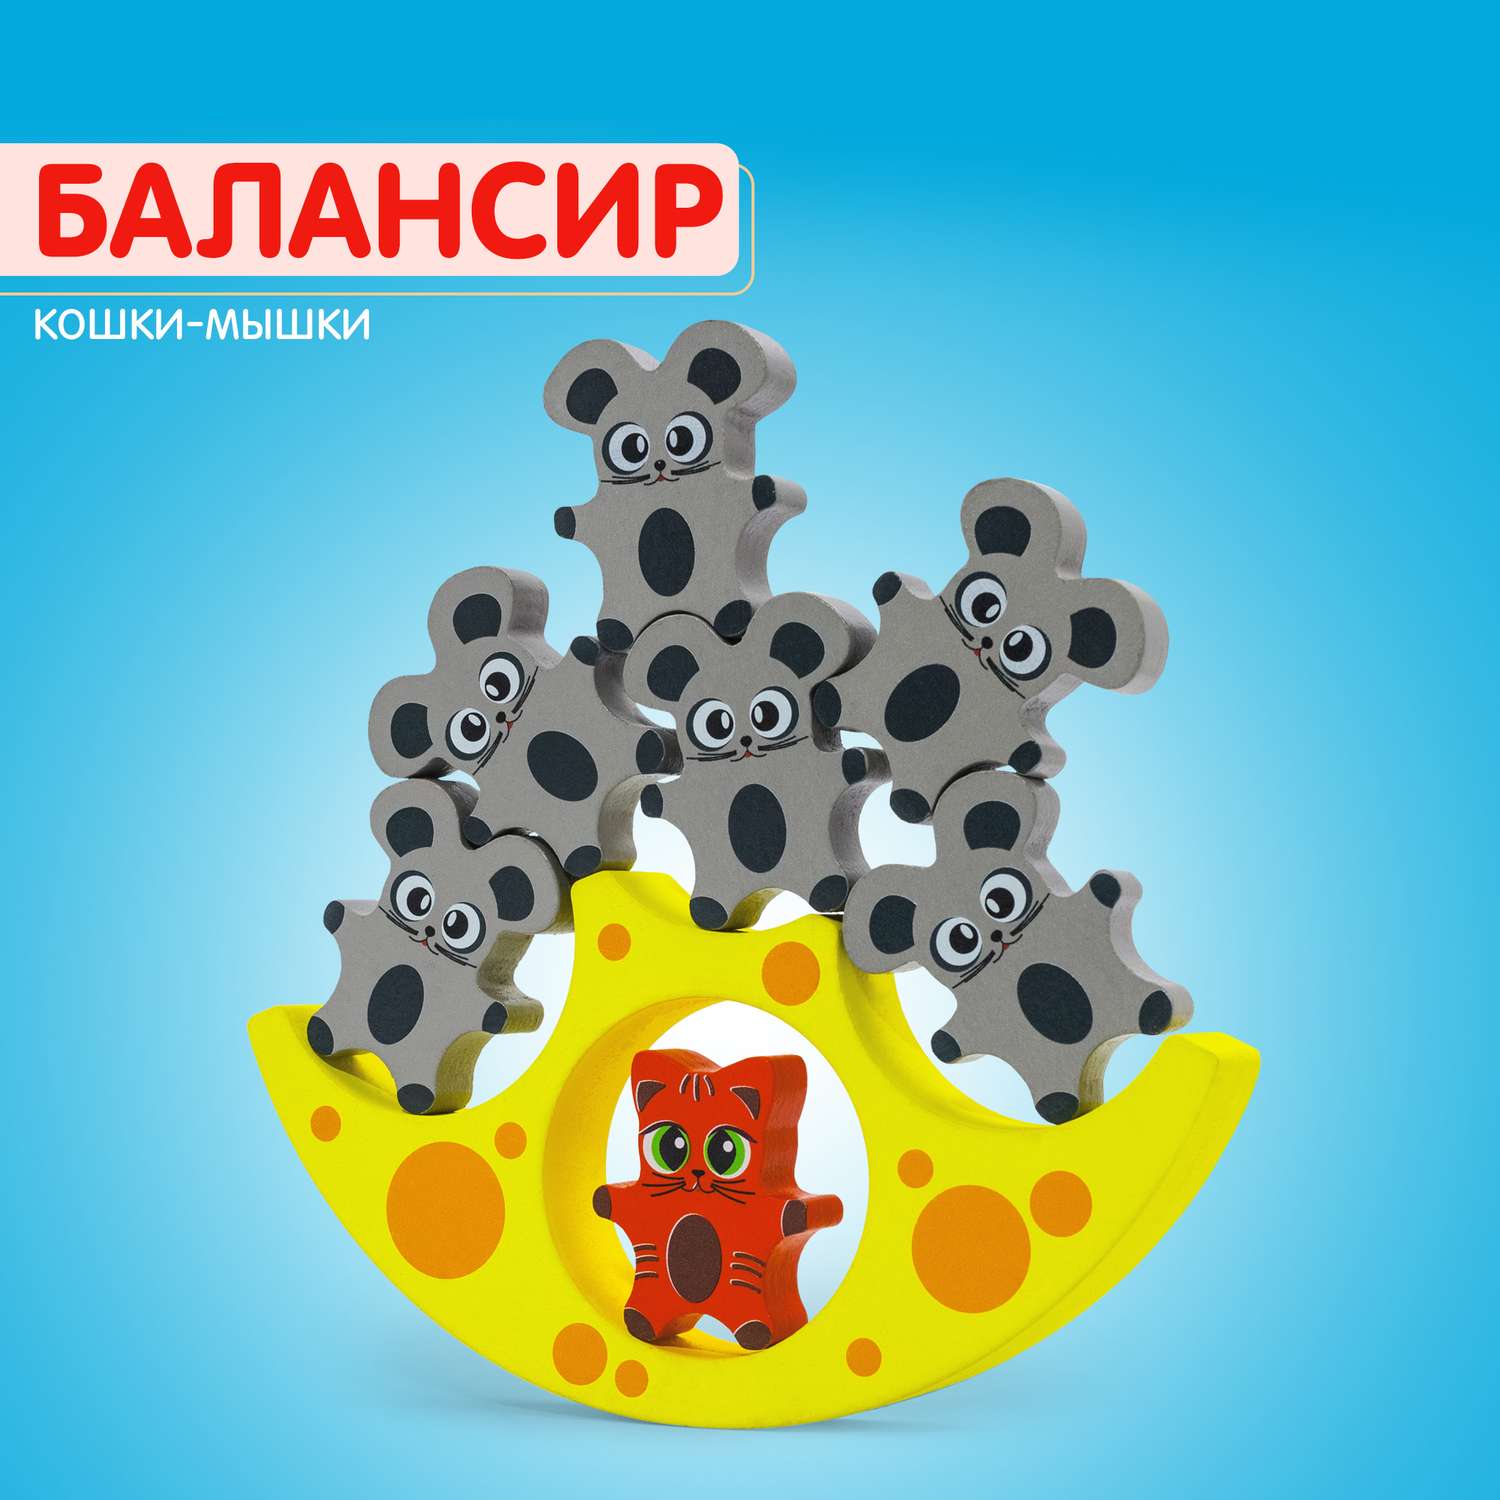 Балансир Кошки-Мышки Alatoys 8 фигурок деревянная развивающая игра - фото 24